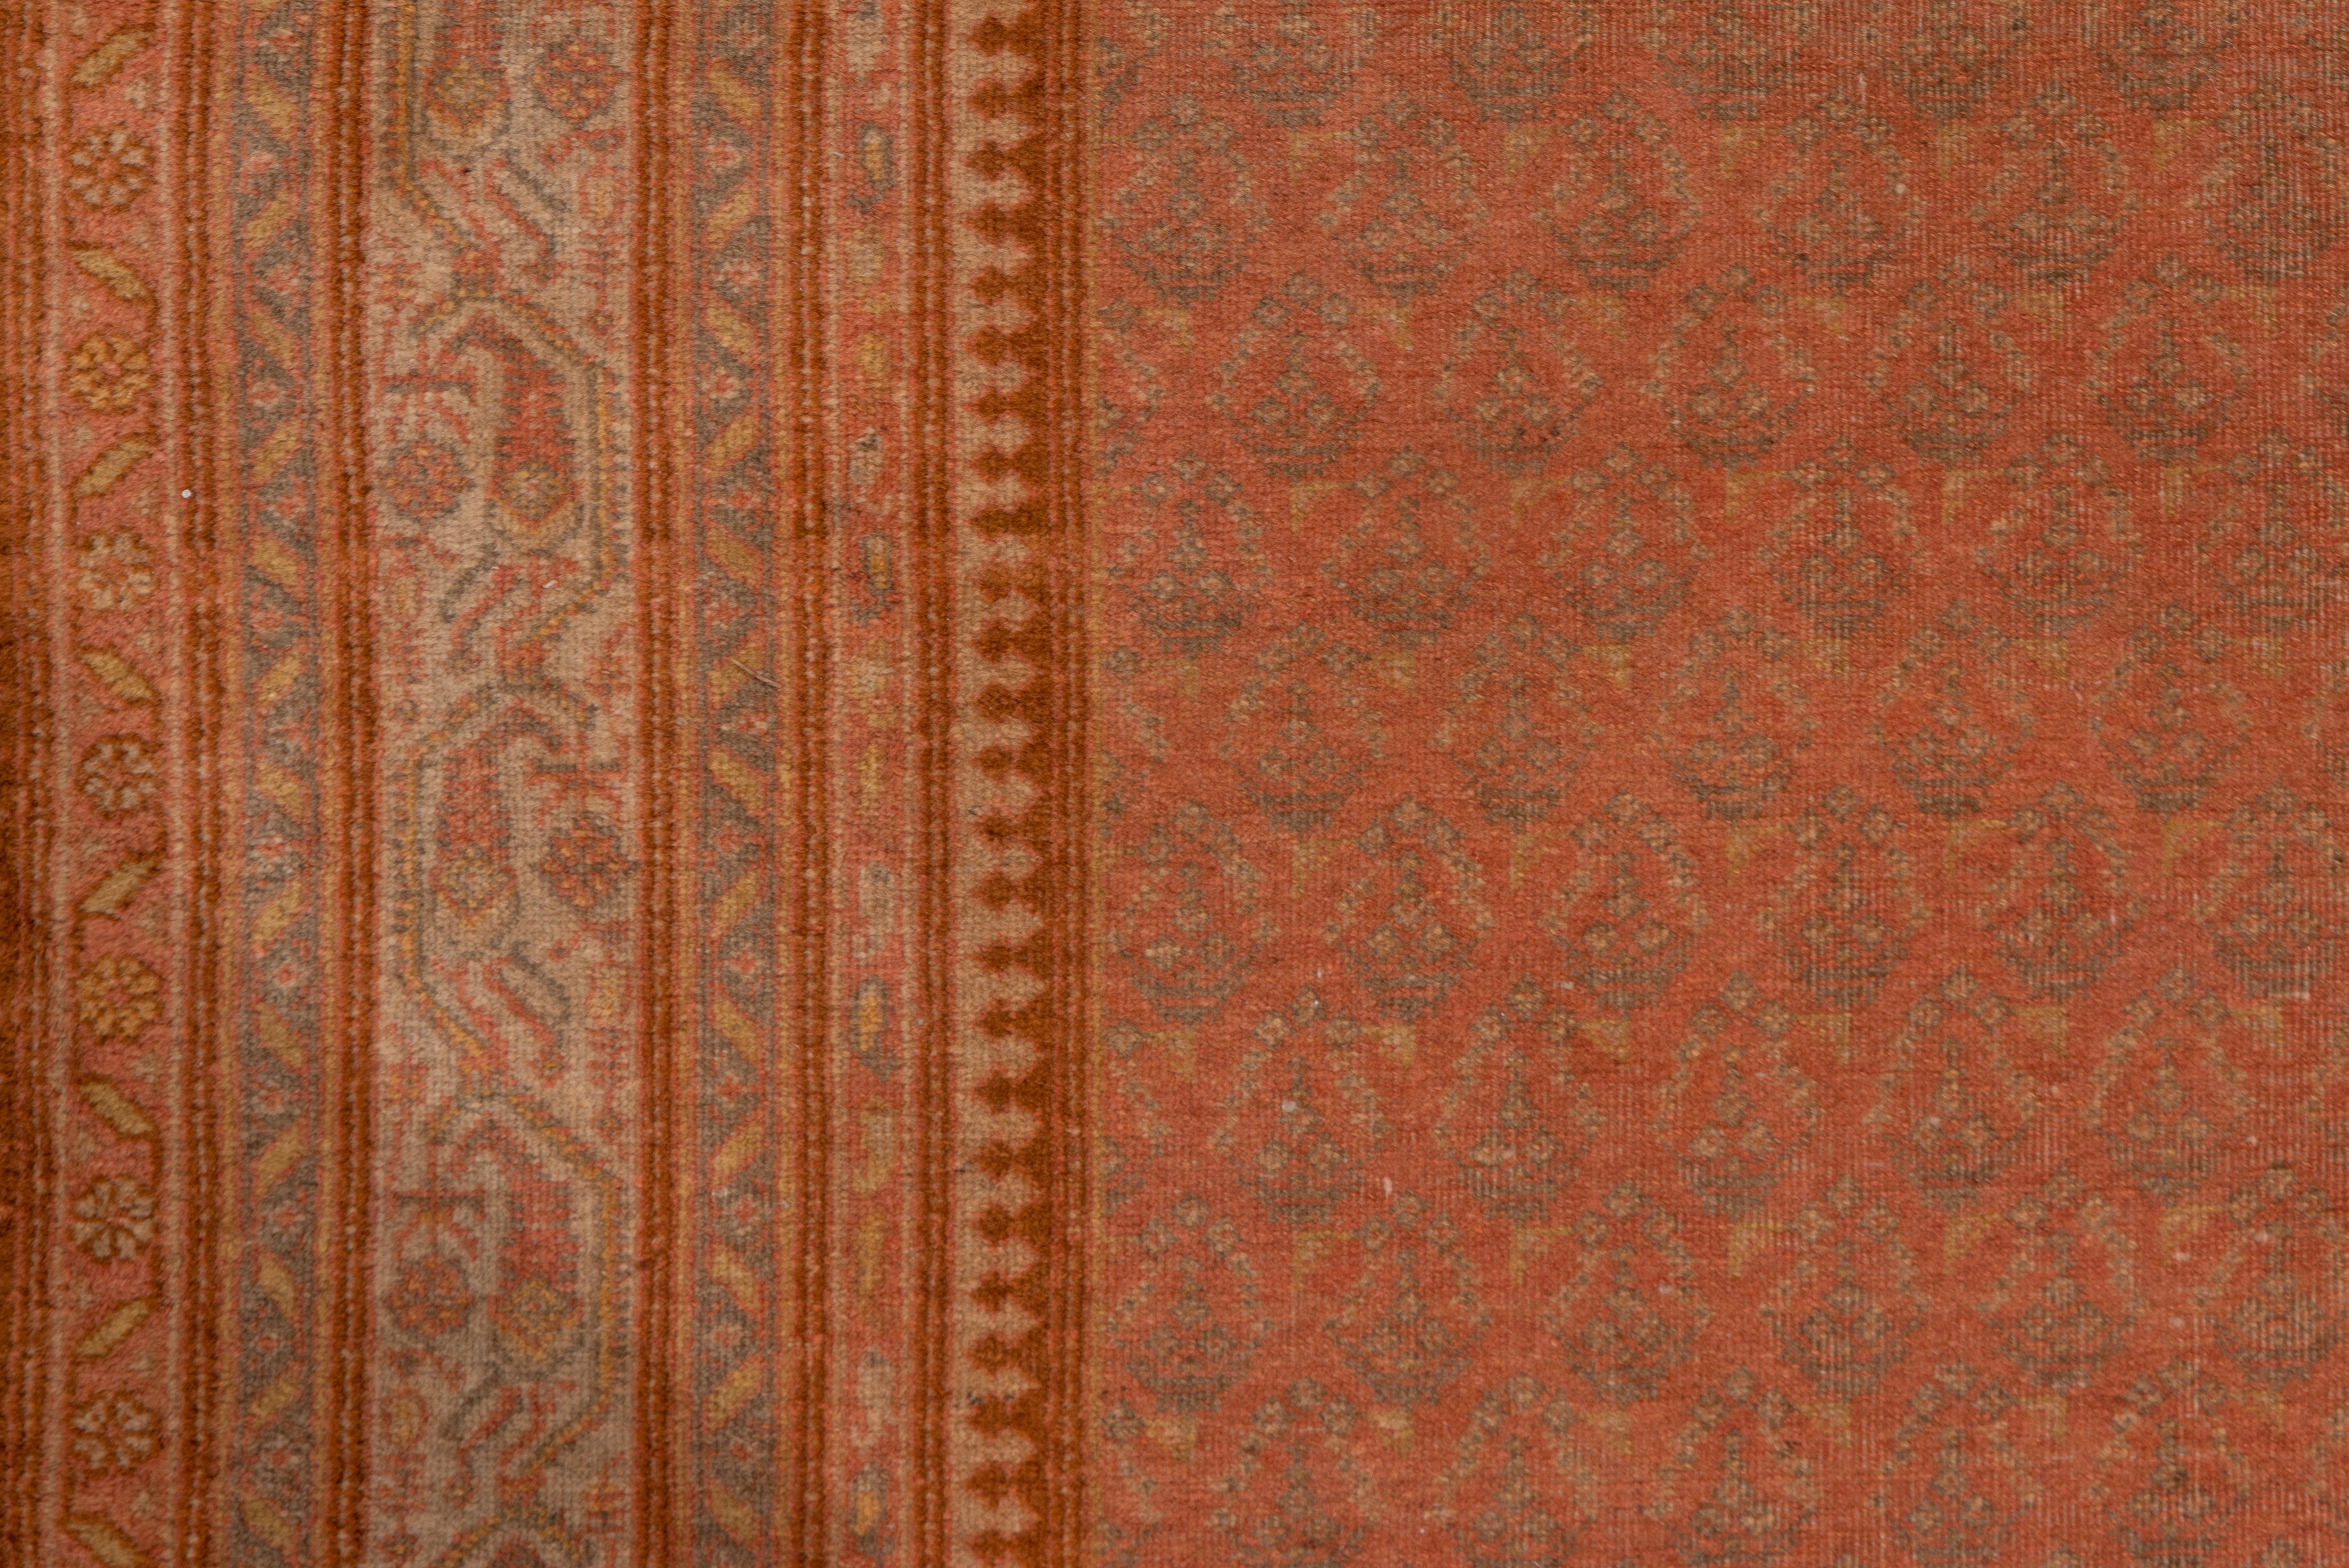 Hand-Knotted Antique Saraband Design Carpet, Orange Tones, Indian Origin, circa 1920s For Sale